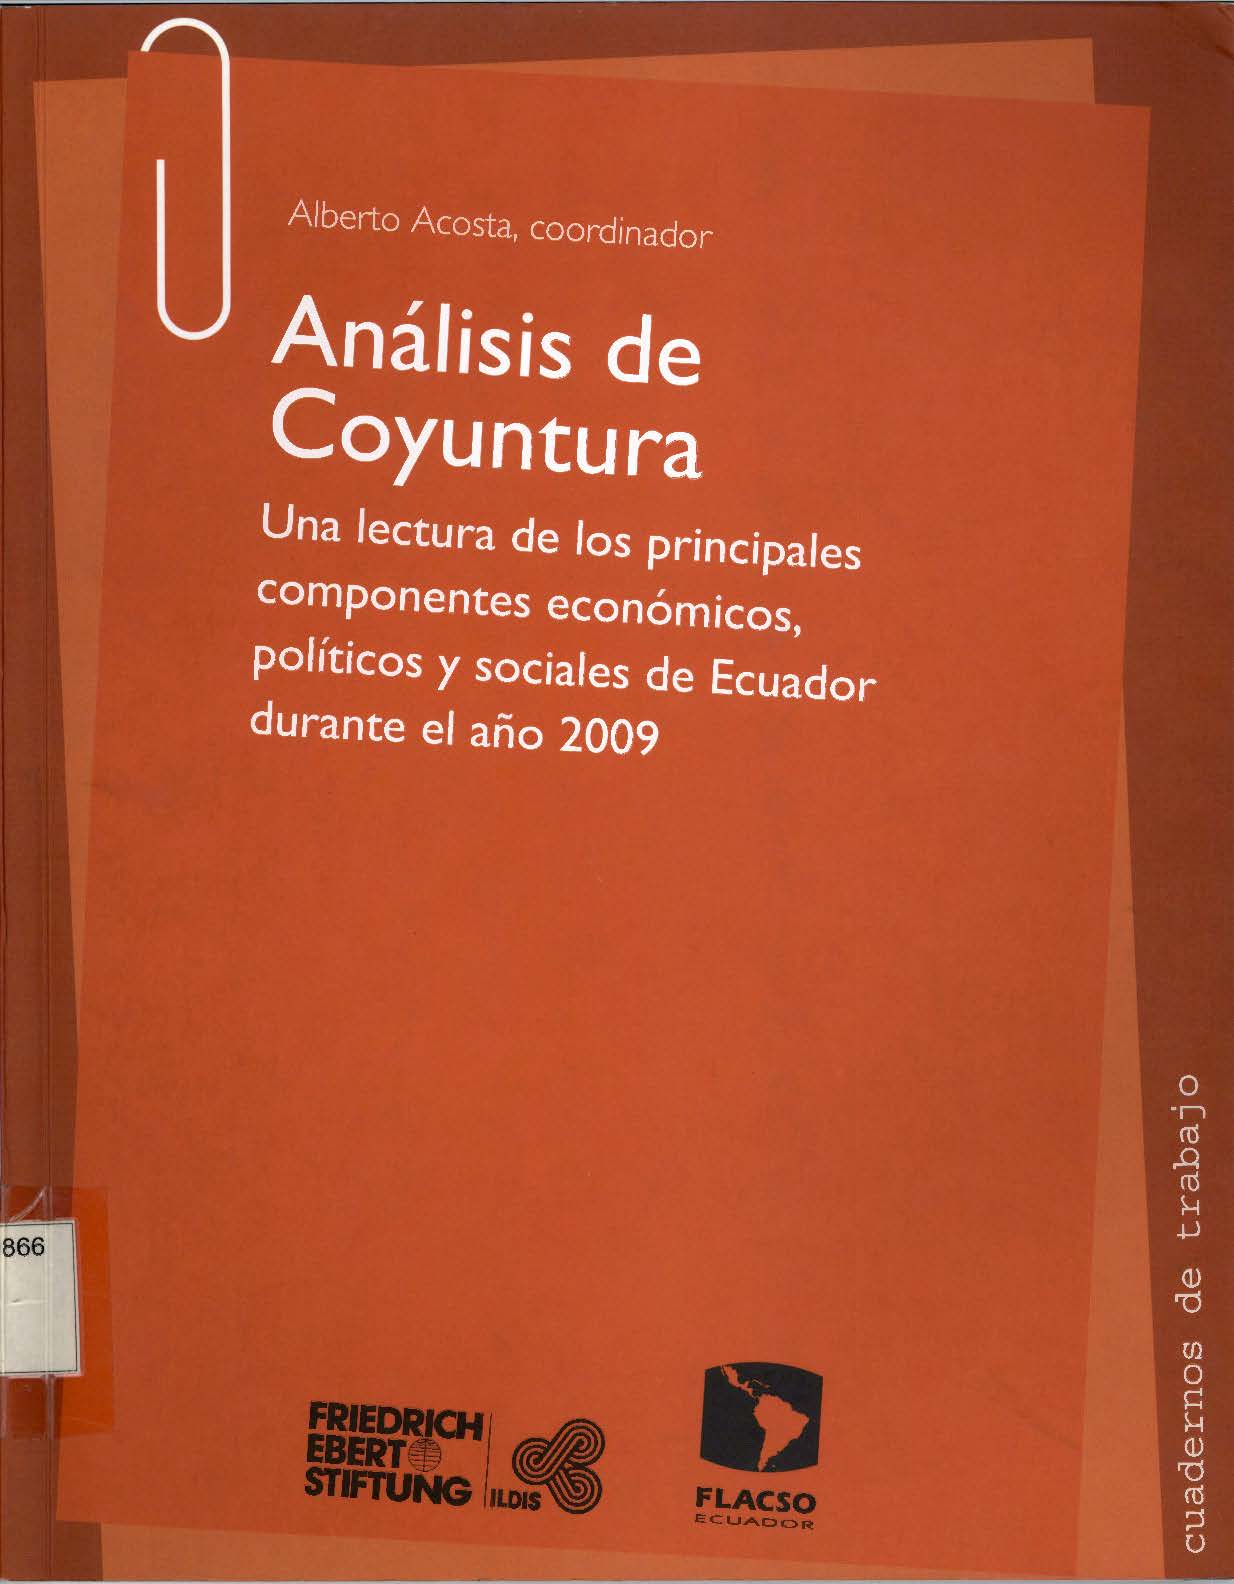 Análisis de coyuntura económica: una lectura de los principales componentes de la economía ecuatoriana durante el primer semestre del año 2009